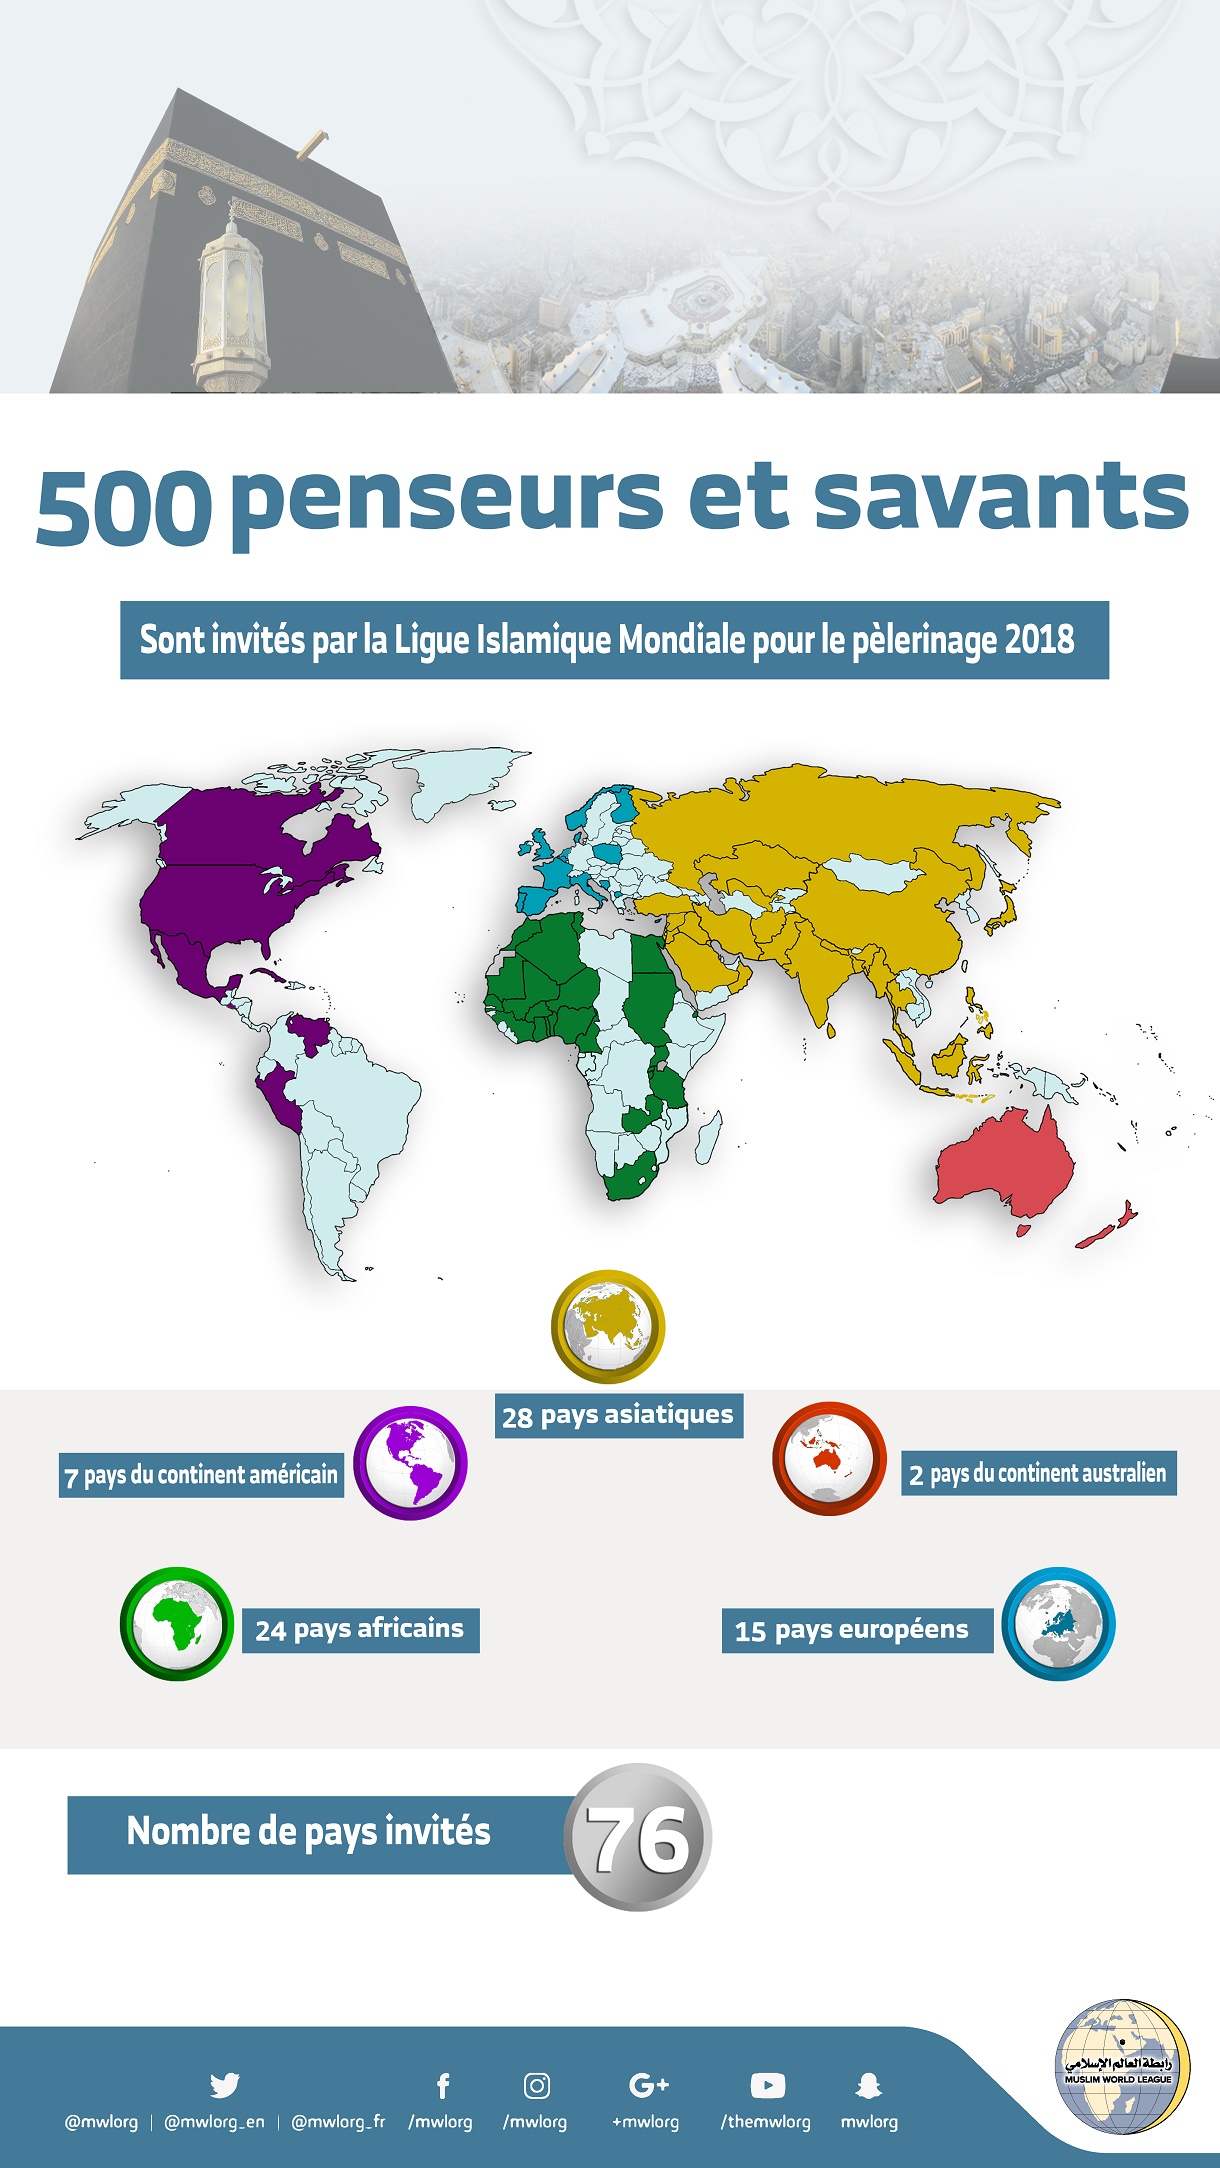 La Ligue Islamique Mondiale reçoit 500 penseurs et savants de 76 pays pour le pèlerinage